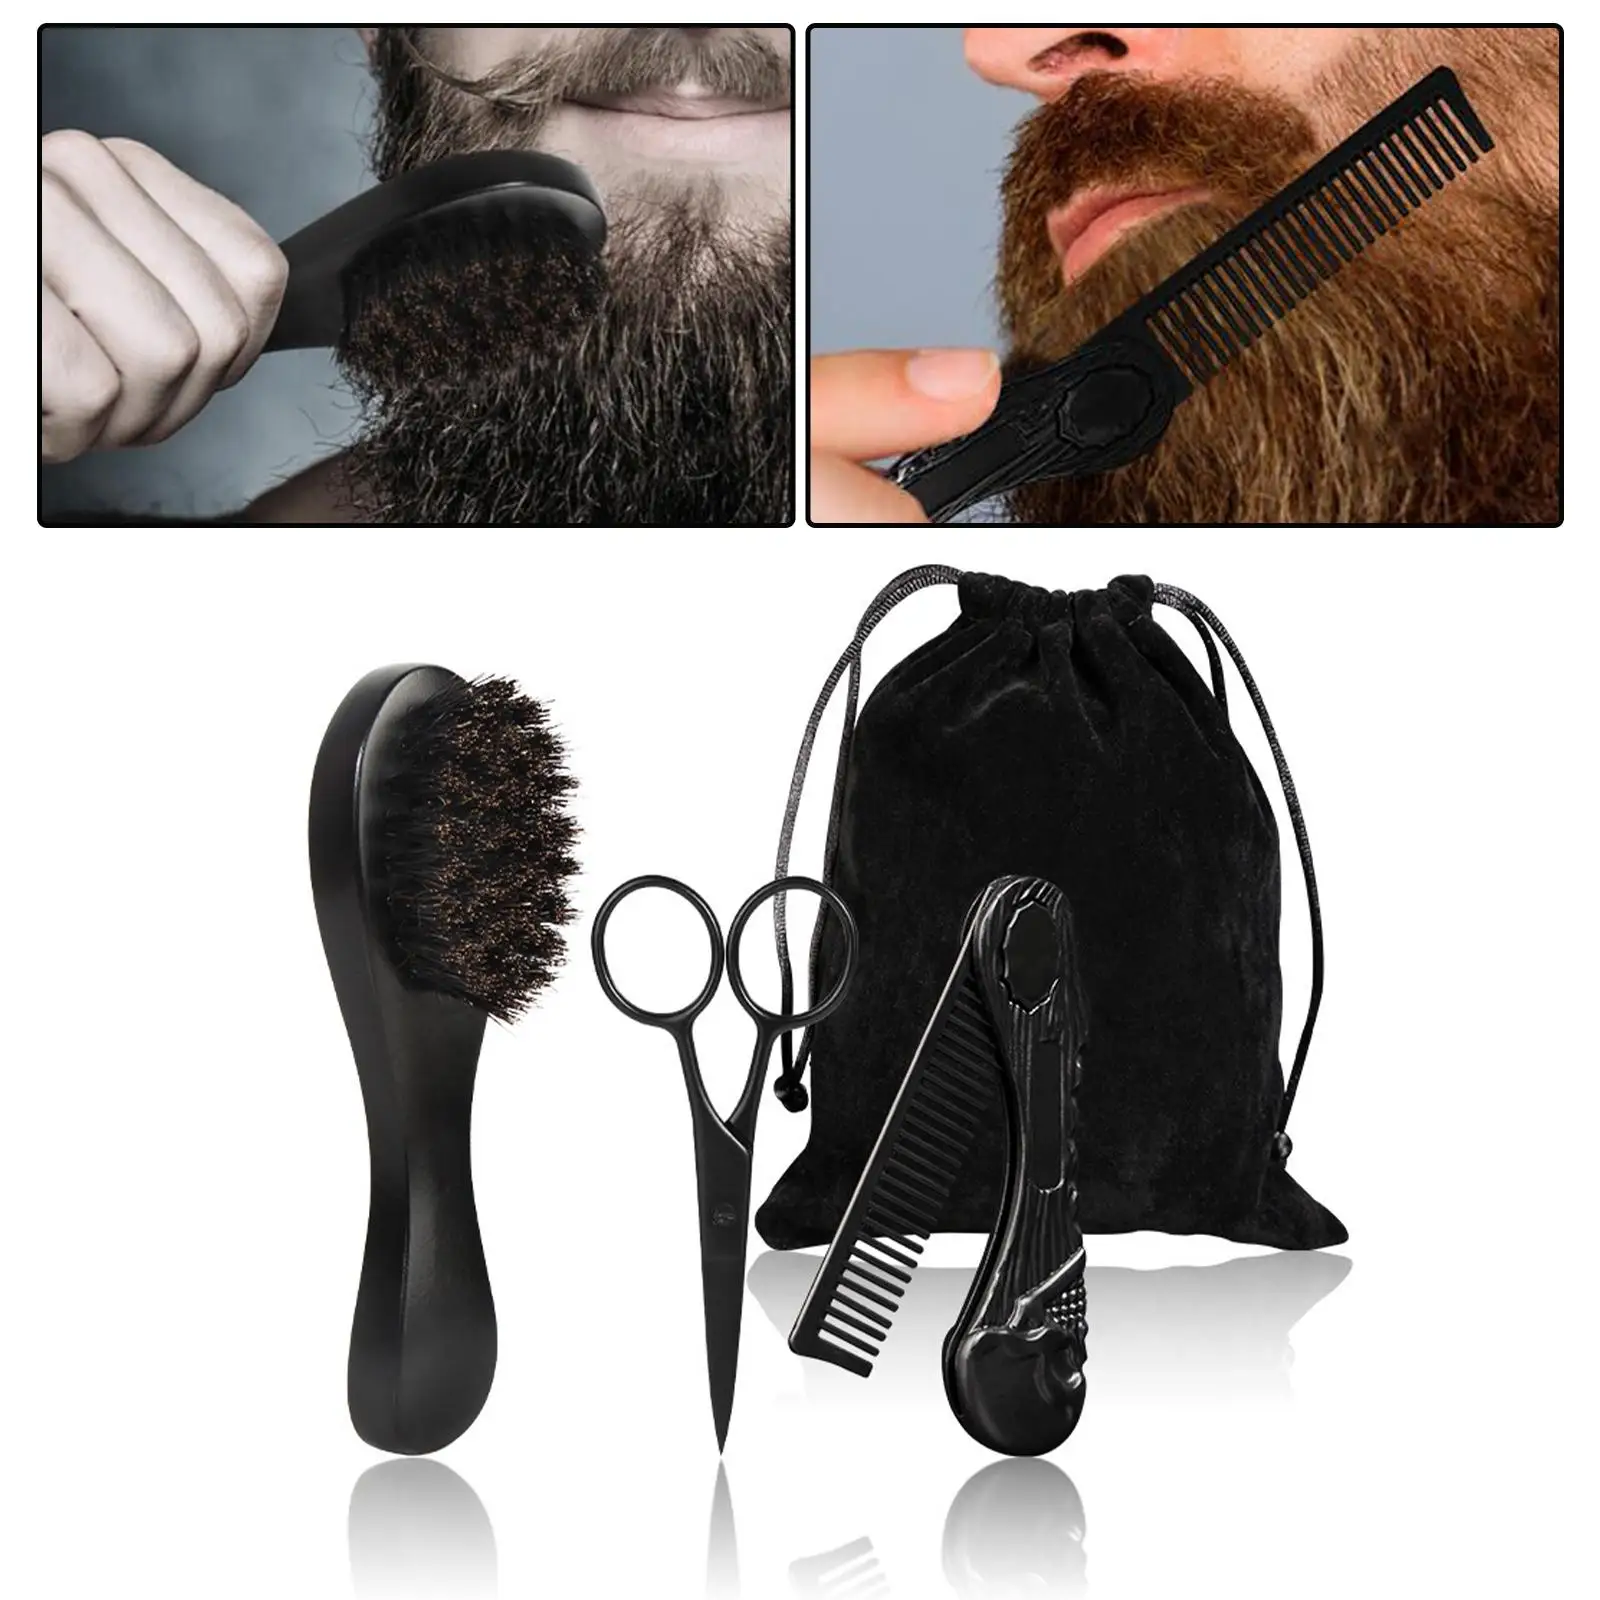 3Pcs Professional Beard Care Kit for Men Wooden Gift Pocket Comb Mustache Scissors Brush for Men`s Travel Home